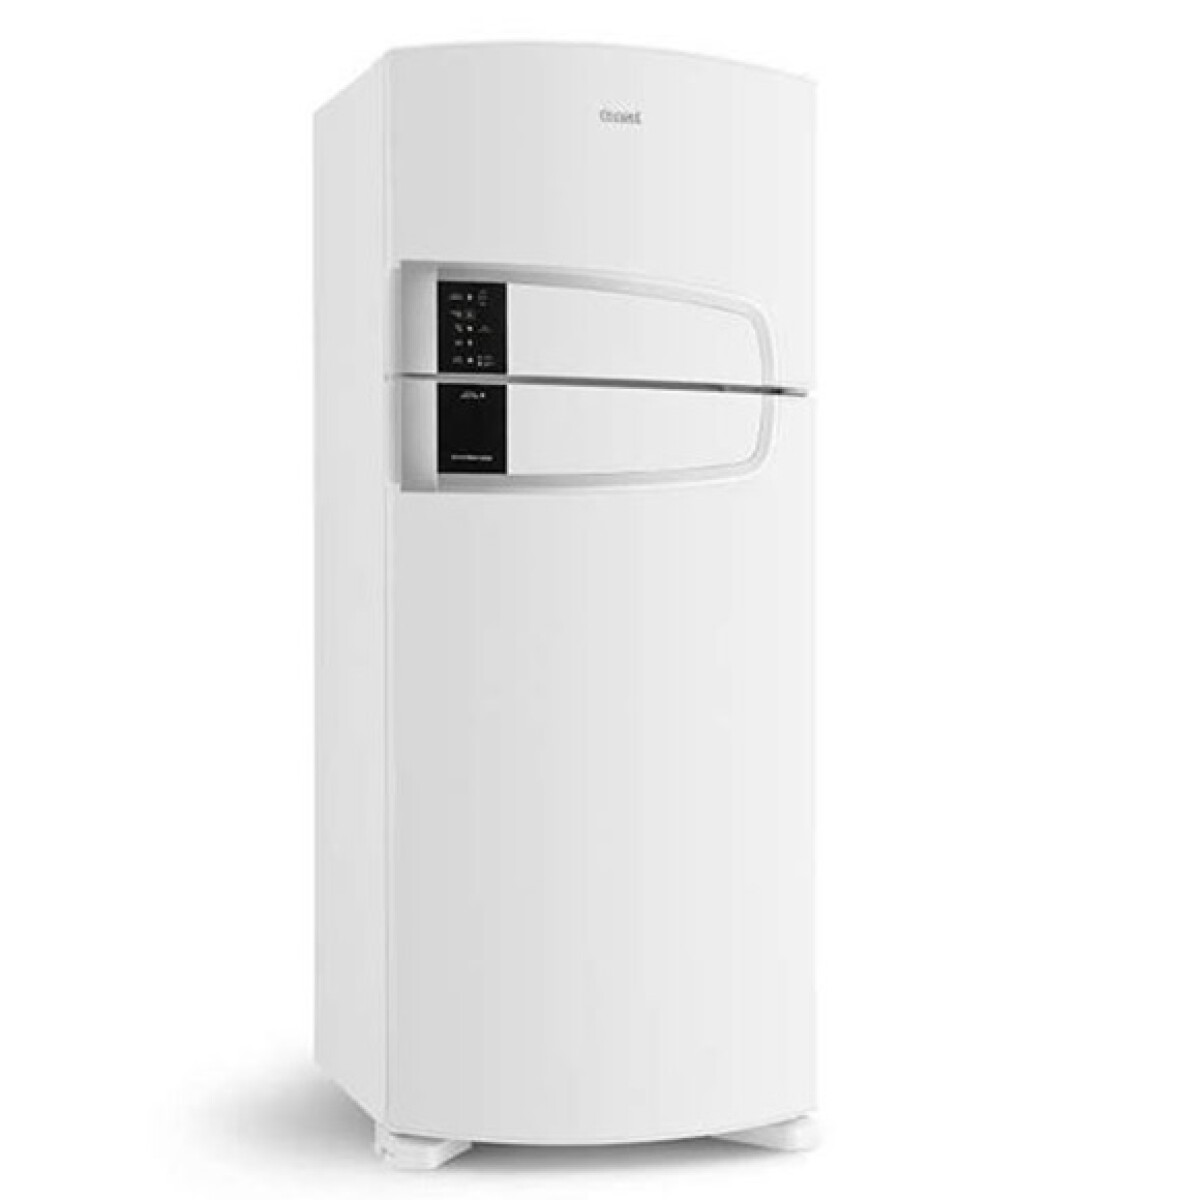 Refrigerador 405 Lts. No Frost Consul Crm52abdwx 